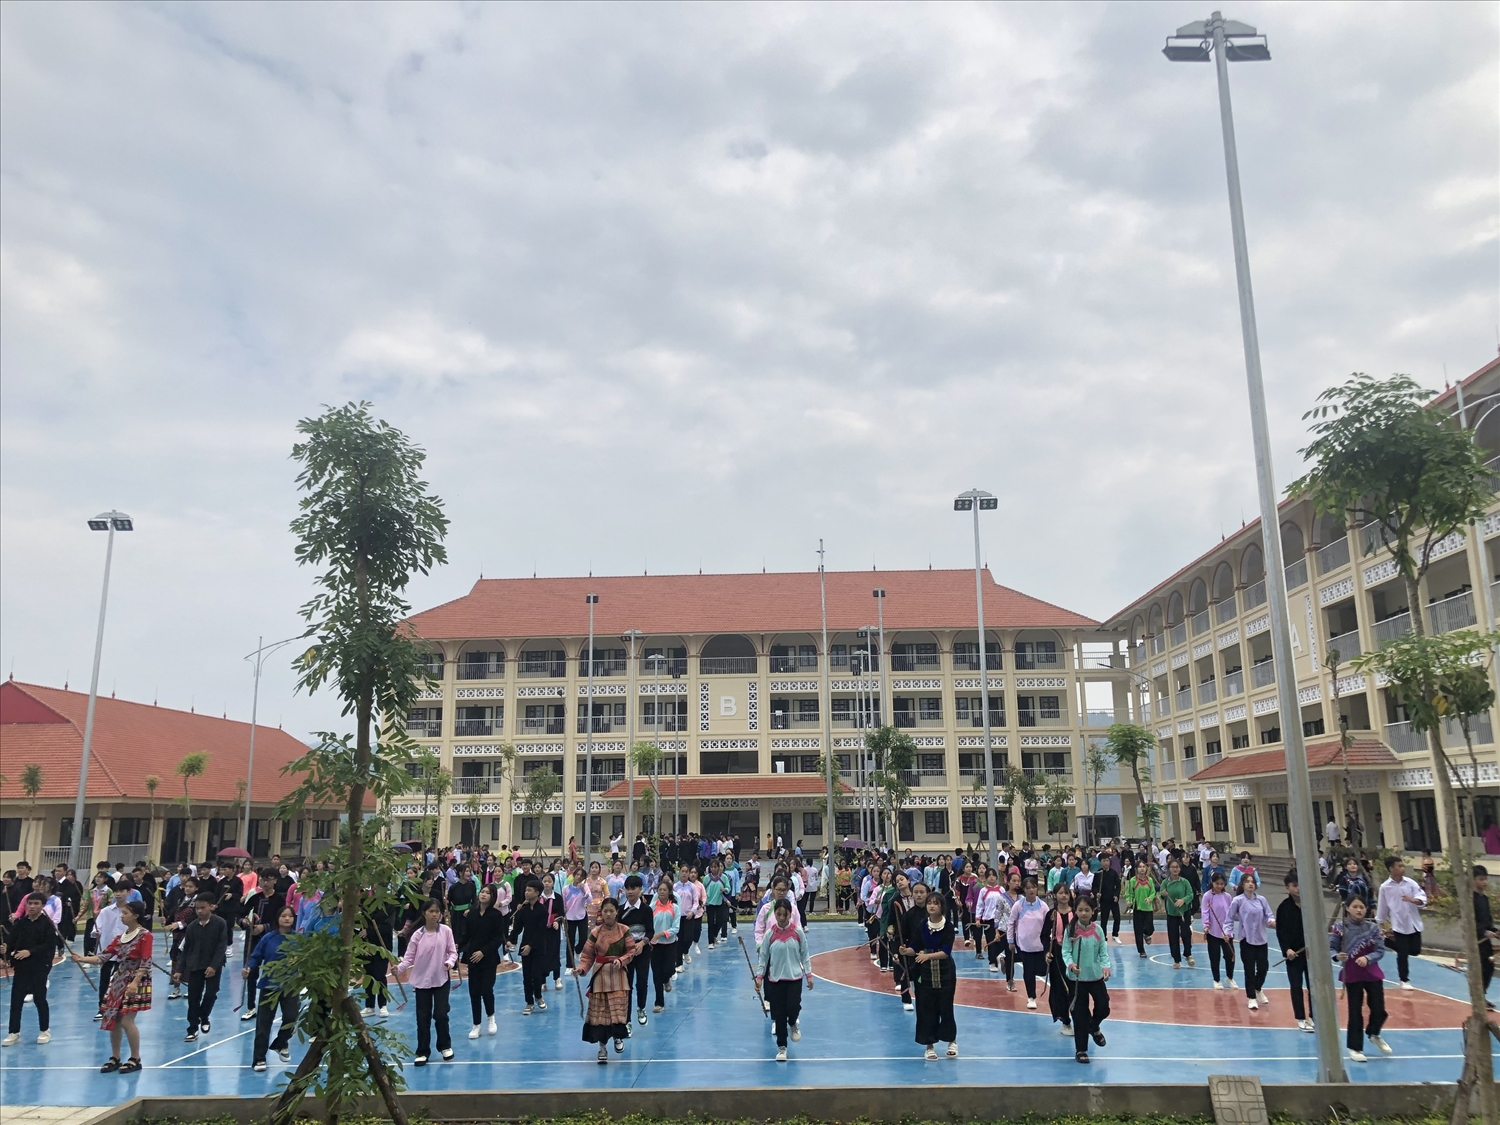 Thầy và trò Trường THPTDTNT tỉnh Lào Cai chuyển về địa điểm mới được xây dựng khang trang, hiện đại